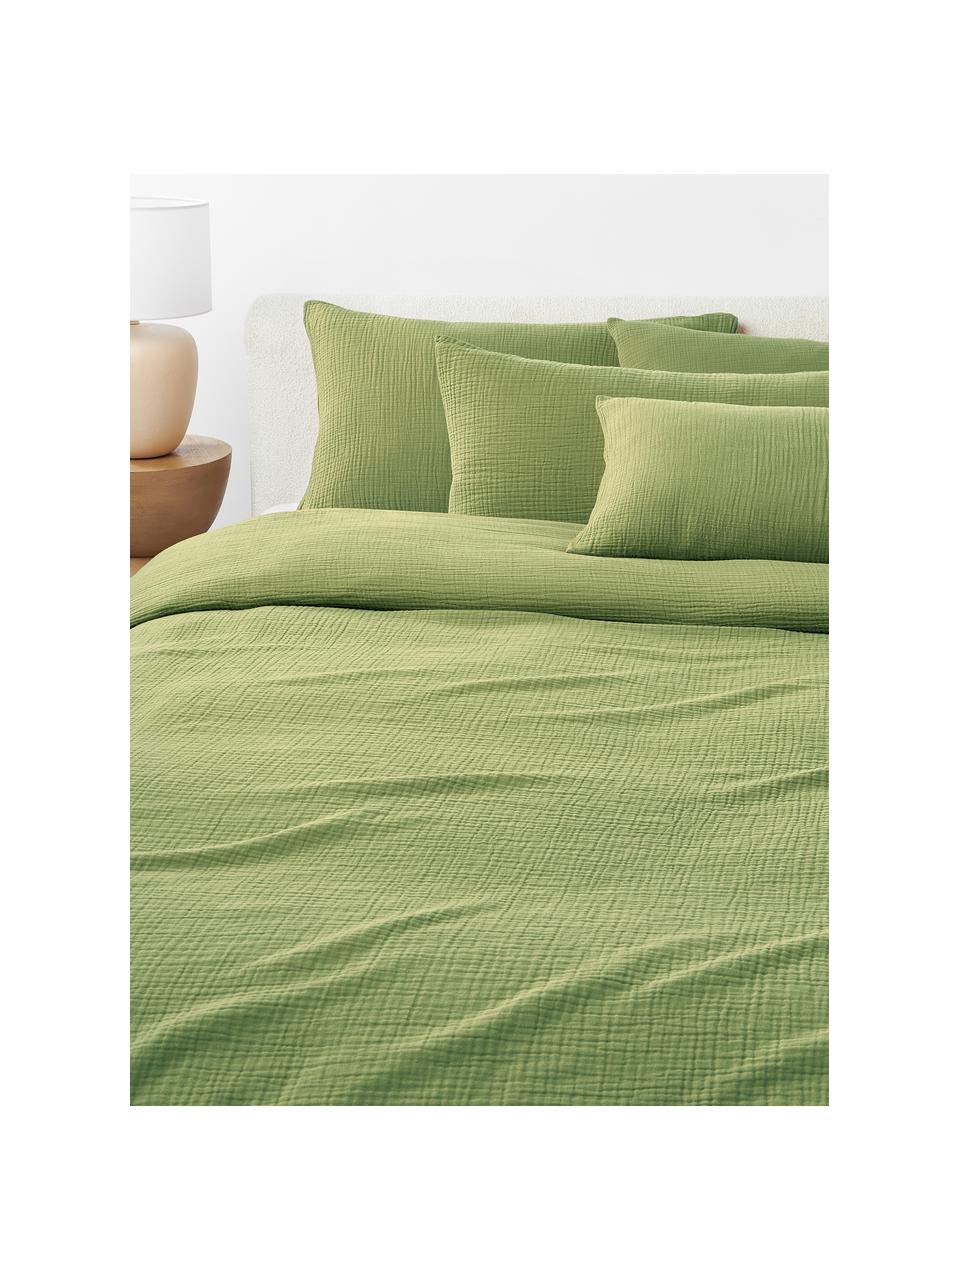 Poszewka na poduszkę z muślinu bawełnianego Odile, Oliwkowy zielony, S 80 x D 80 cm